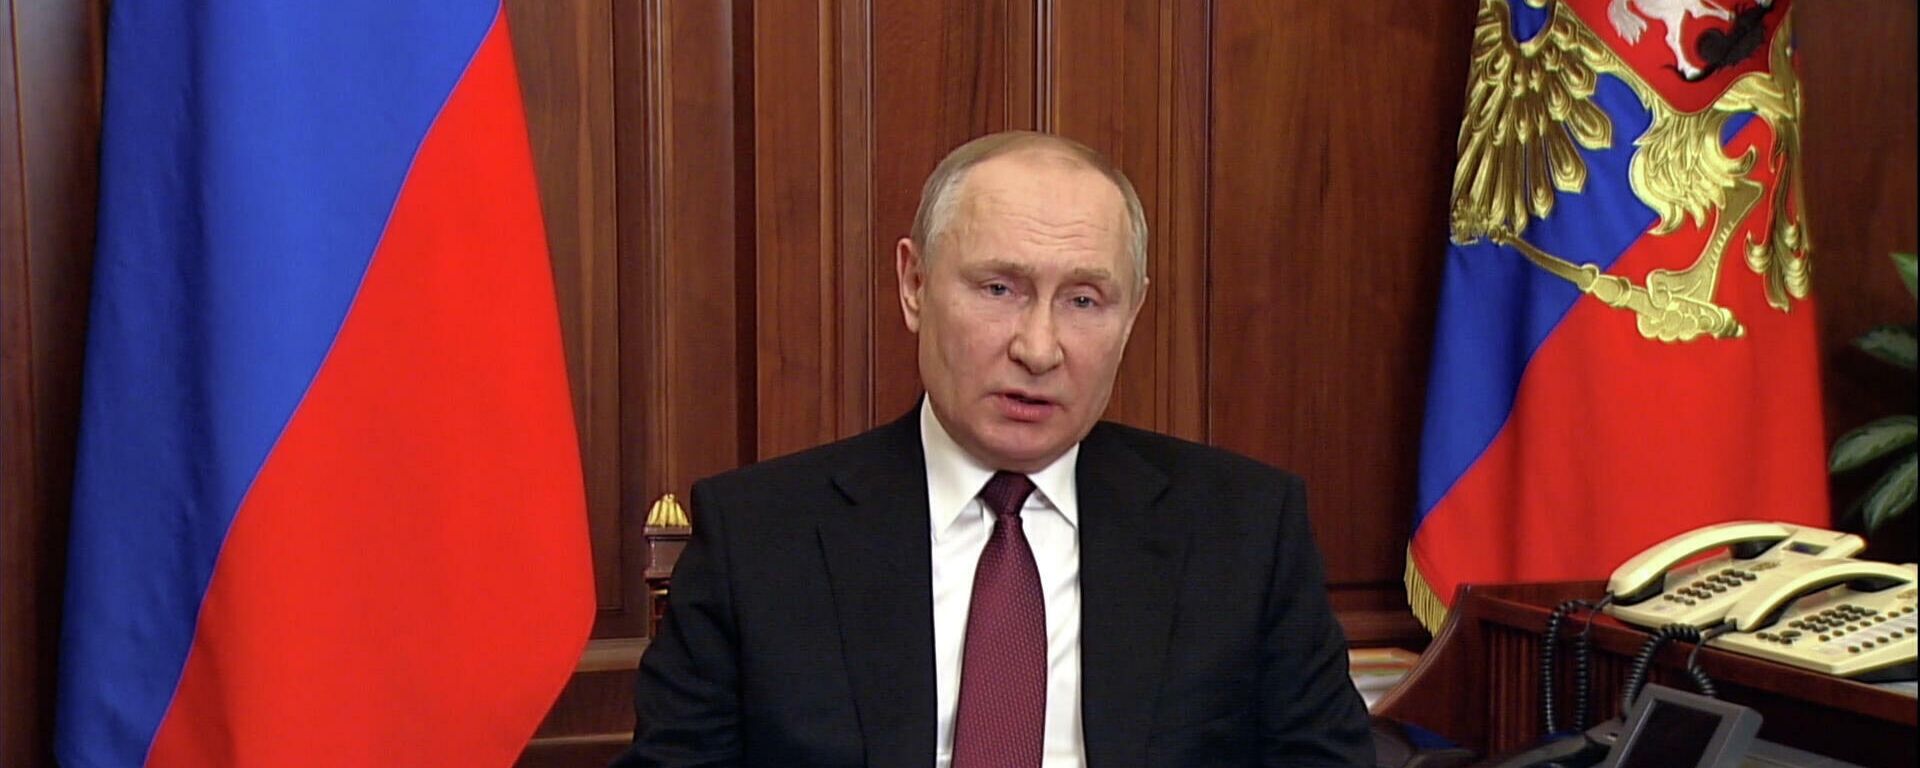 Президент России Владимир Путин объявил о начале военной операции в Донбассе - Sputnik Латвия, 1920, 24.02.2022